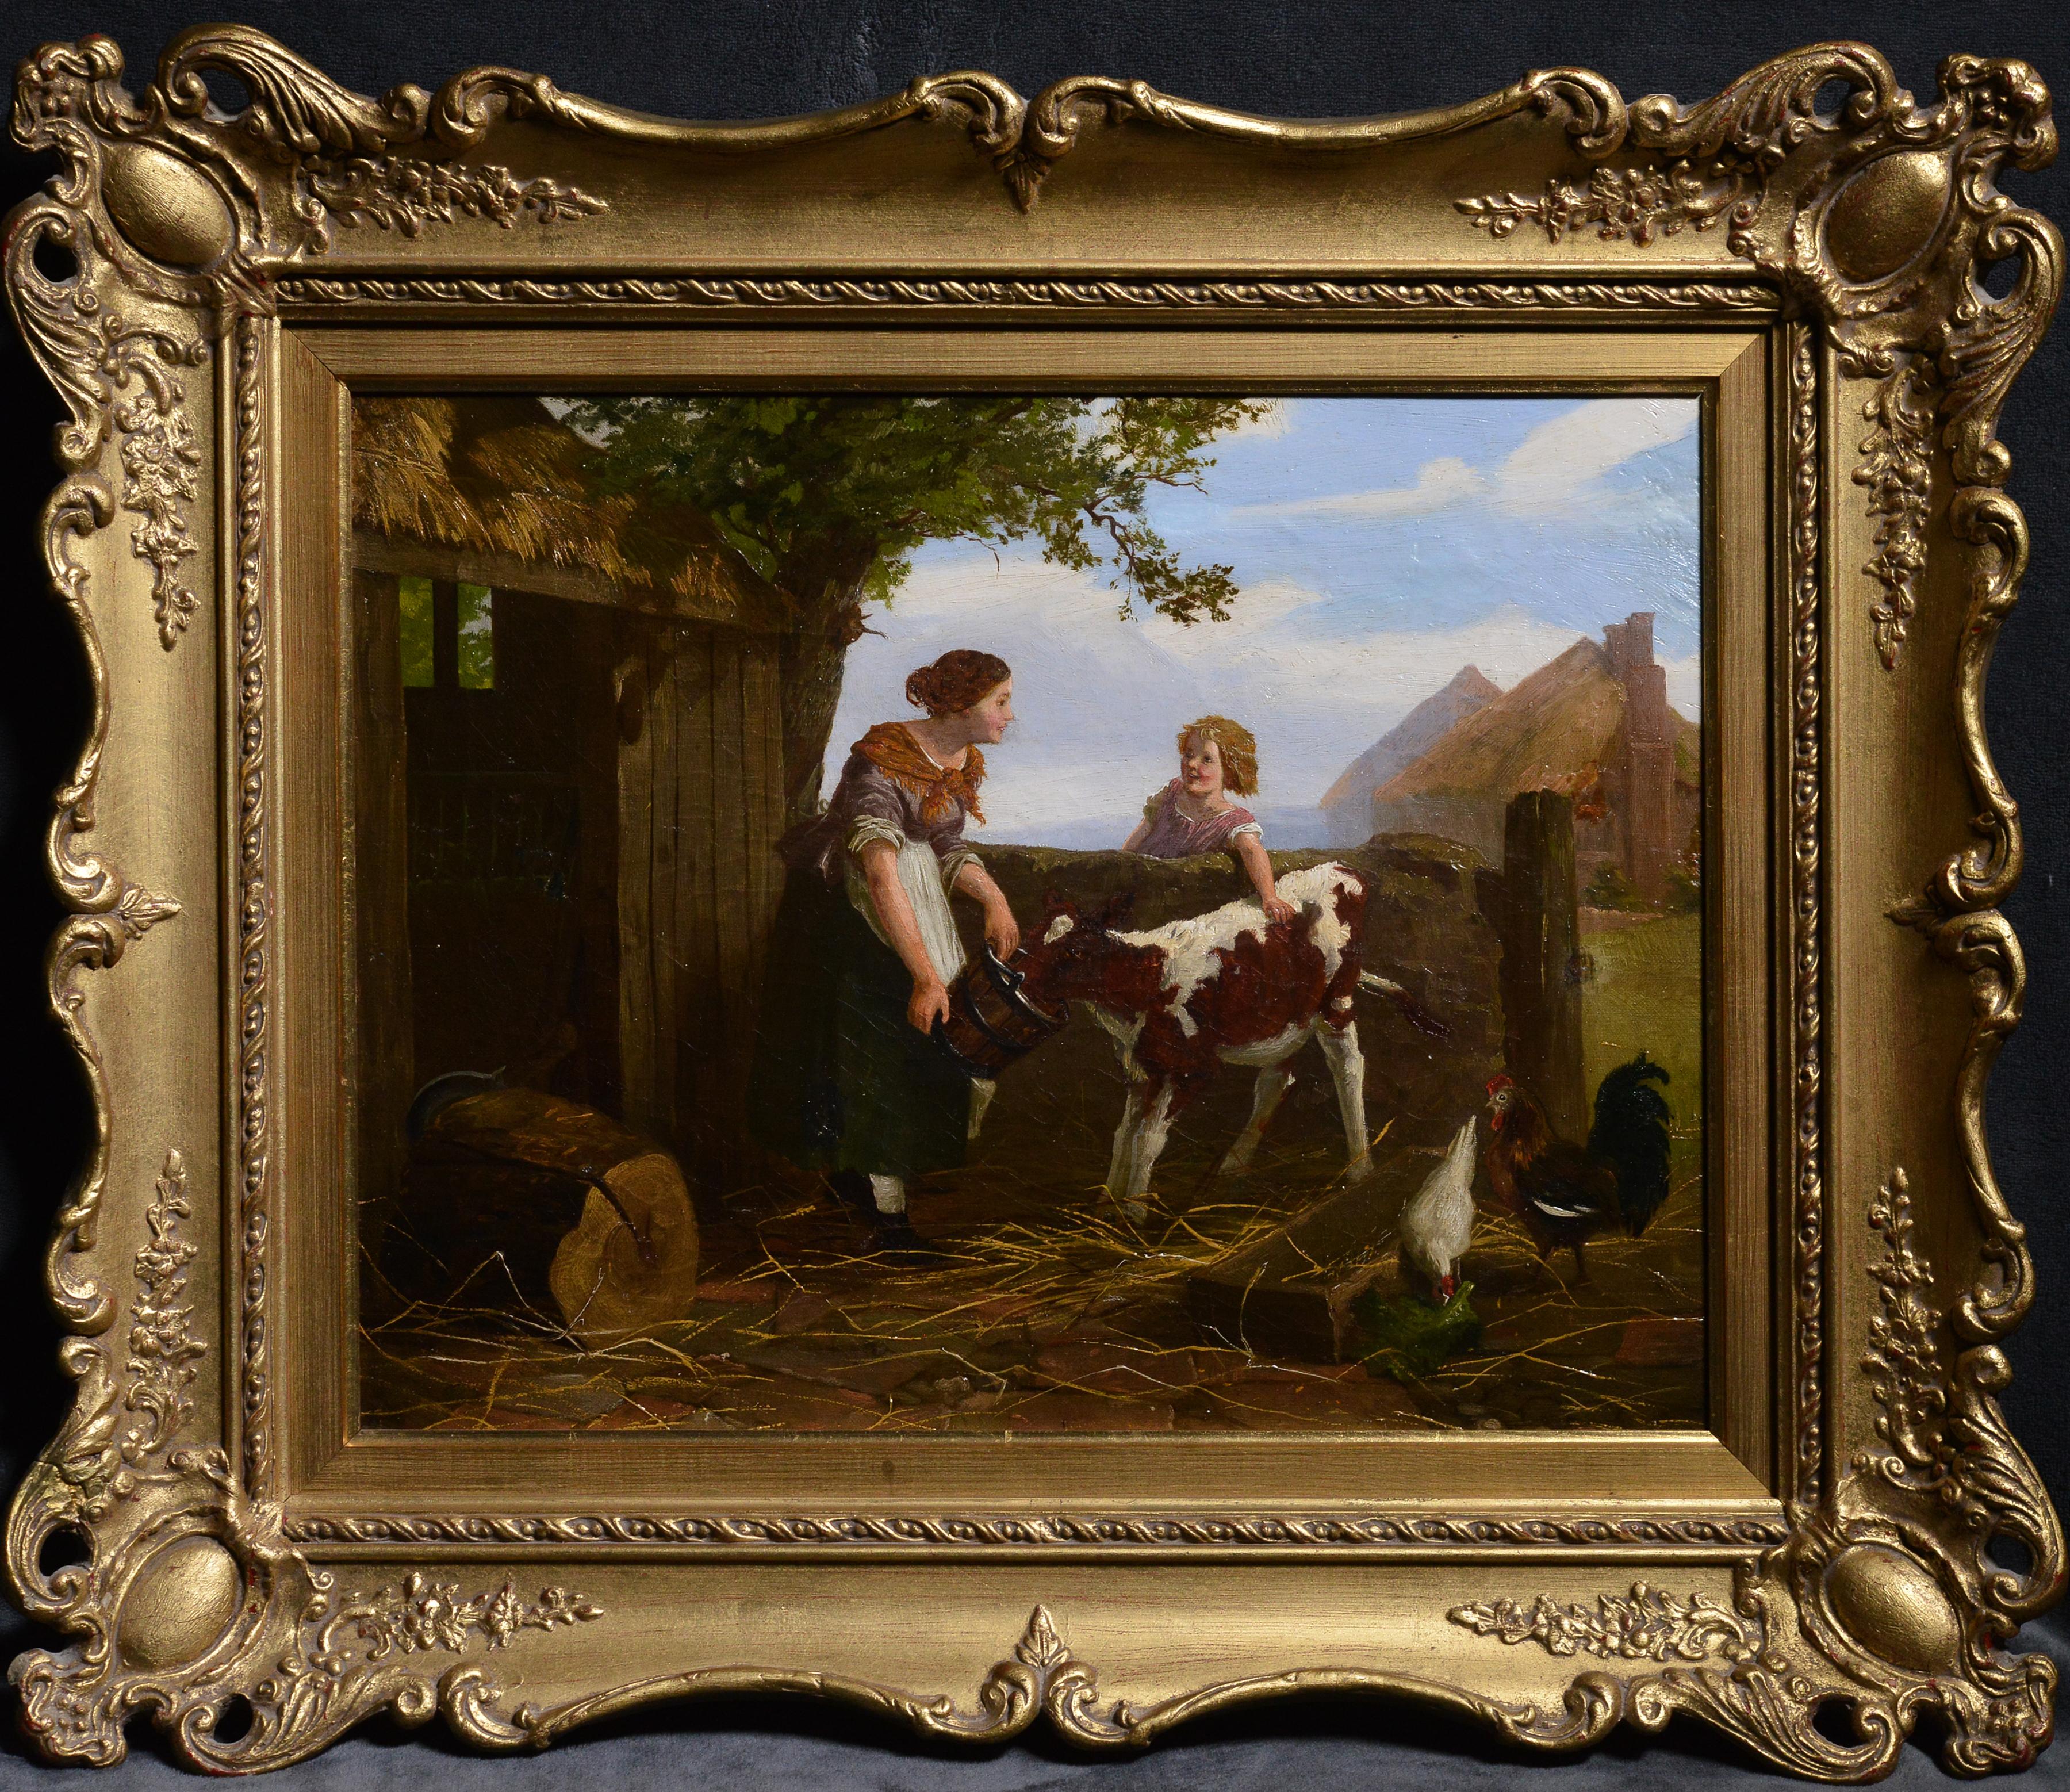 Animal Painting Unknown - Jolie scène de ferme avec une fille à la tête de rouge, milieu du 19e siècle